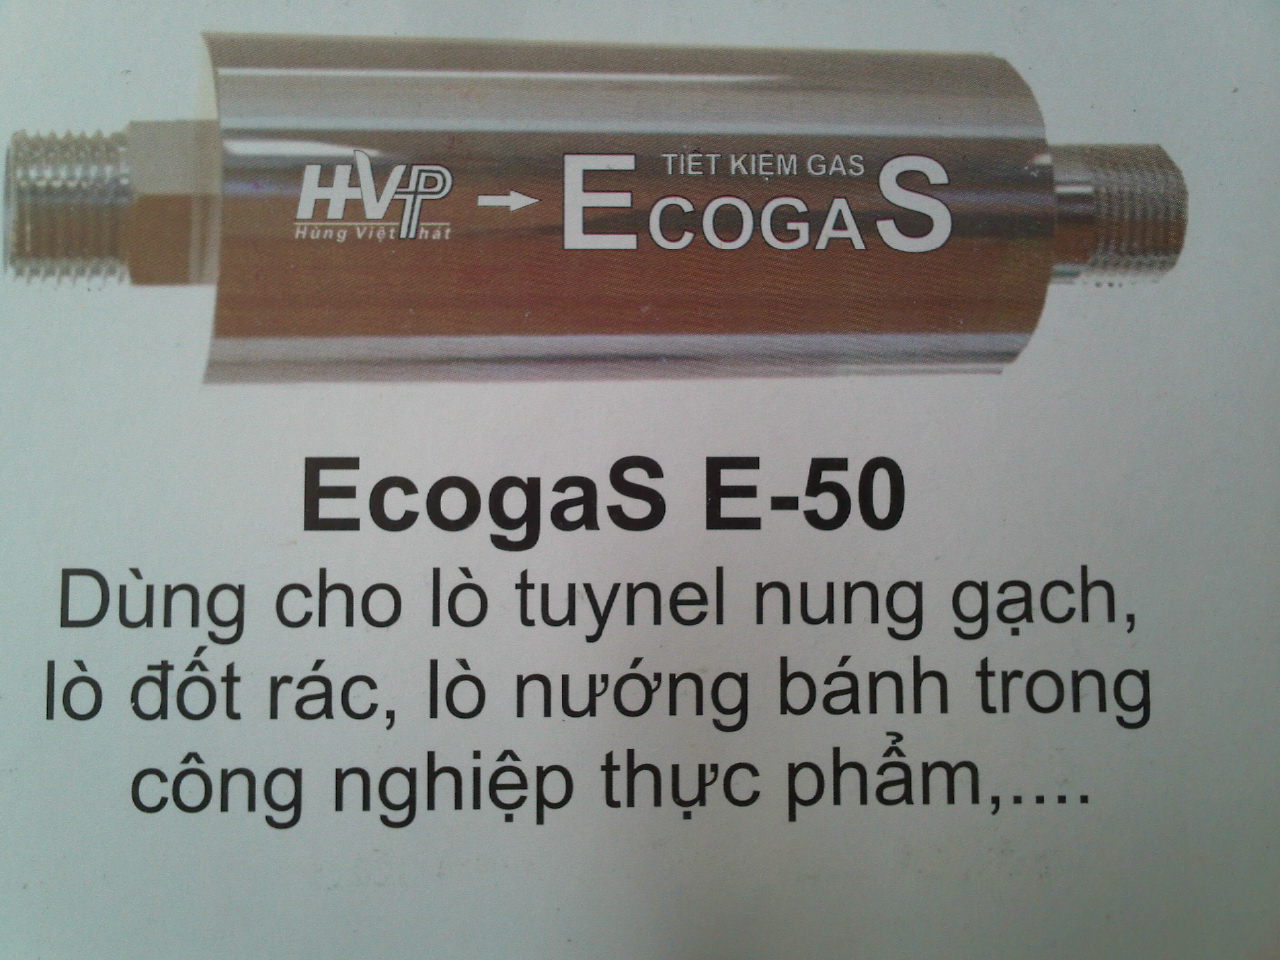 Thiết bị tiết kiệm gas EcogaS E-50